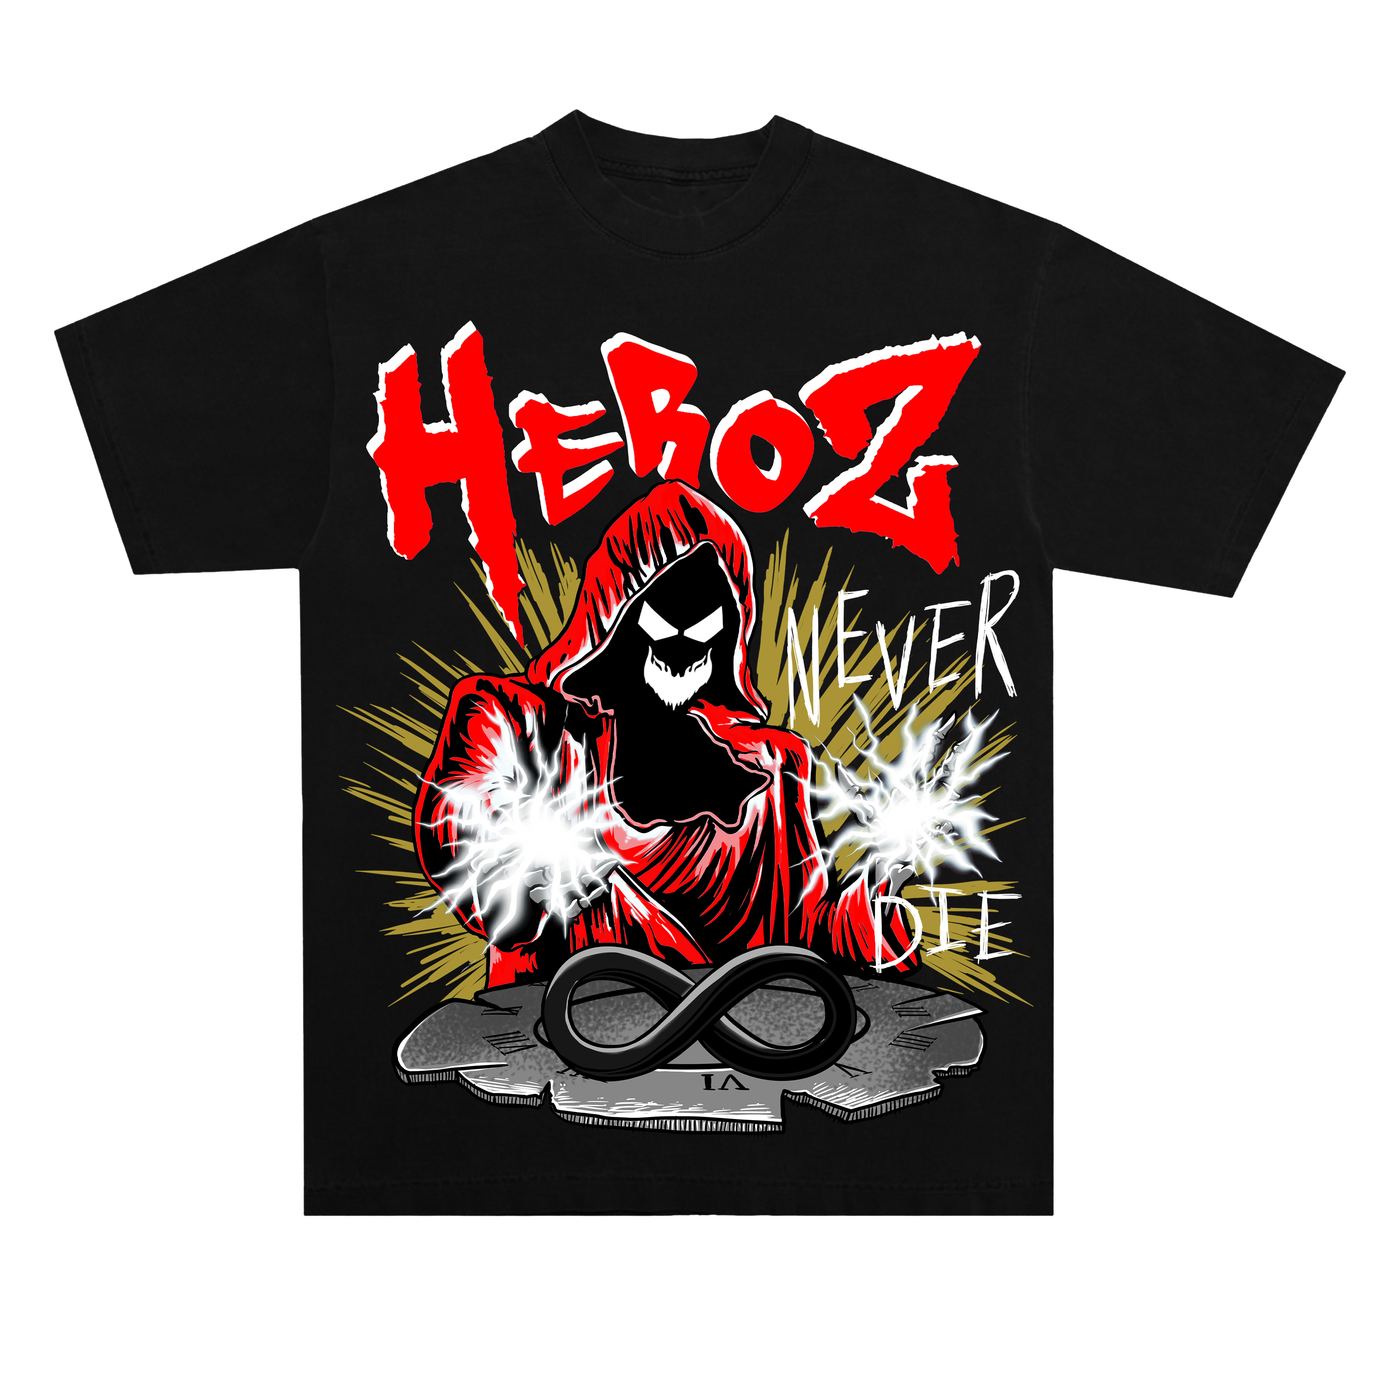 Heroz Never Die Graphic Tee- Black/Red